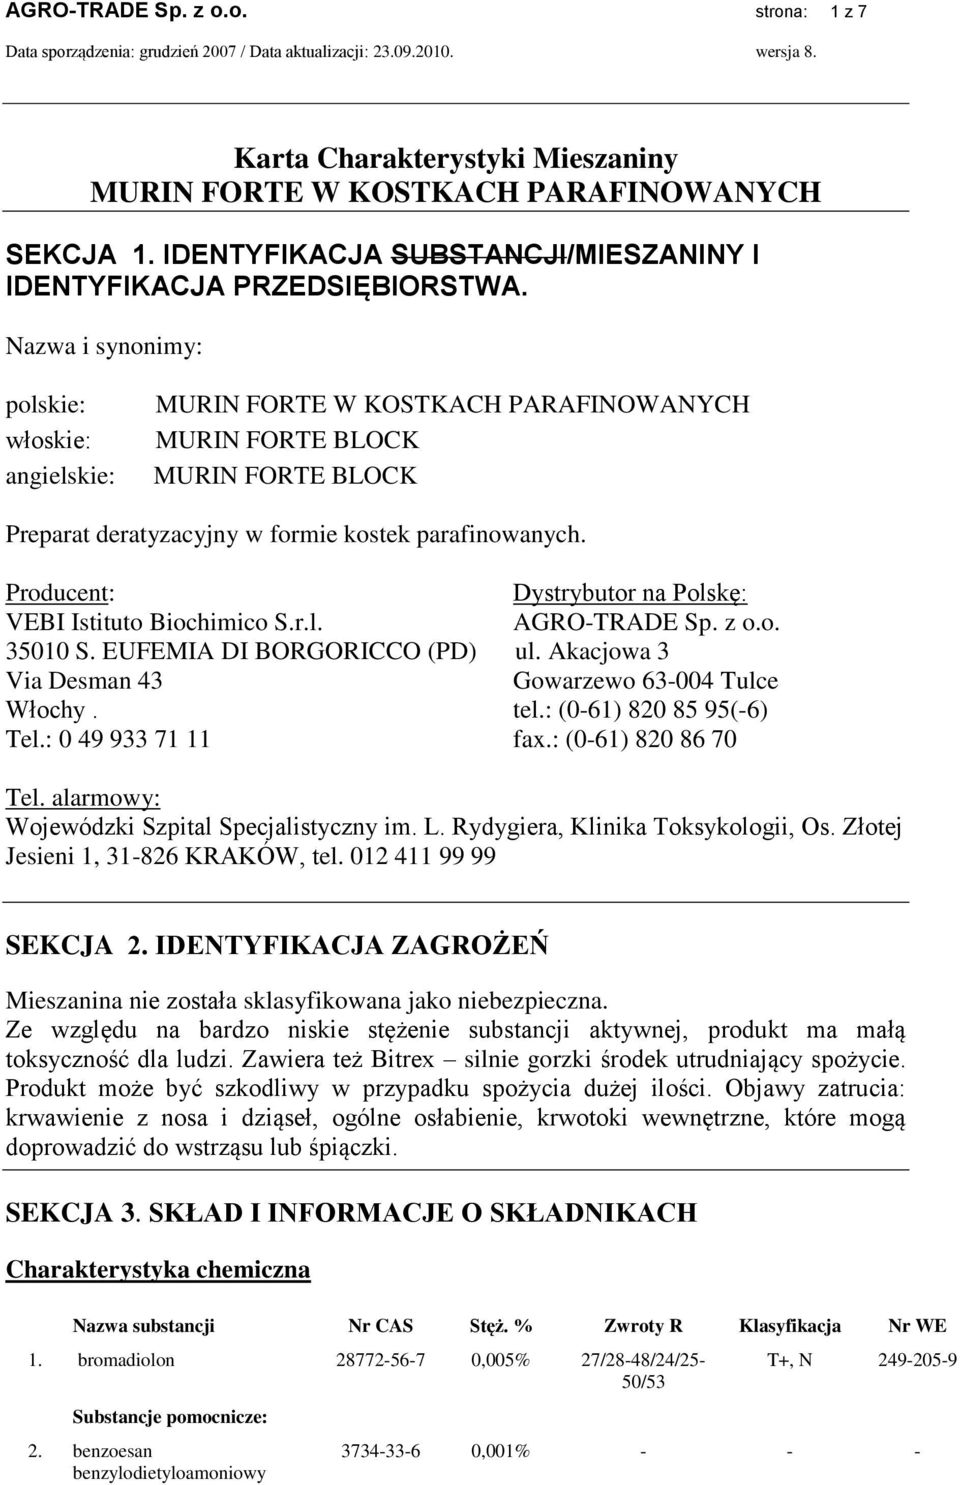 Producent: Dystrybutor na Polskę: VEBI Istituto Biochimico S.r.l. AGRO-TRADE Sp. z o.o. 35010 S. EUFEMIA DI BORGORICCO (PD) ul. Akacjowa 3 Via Desman 43 Gowarzewo 63-004 Tulce Włochy. tel.